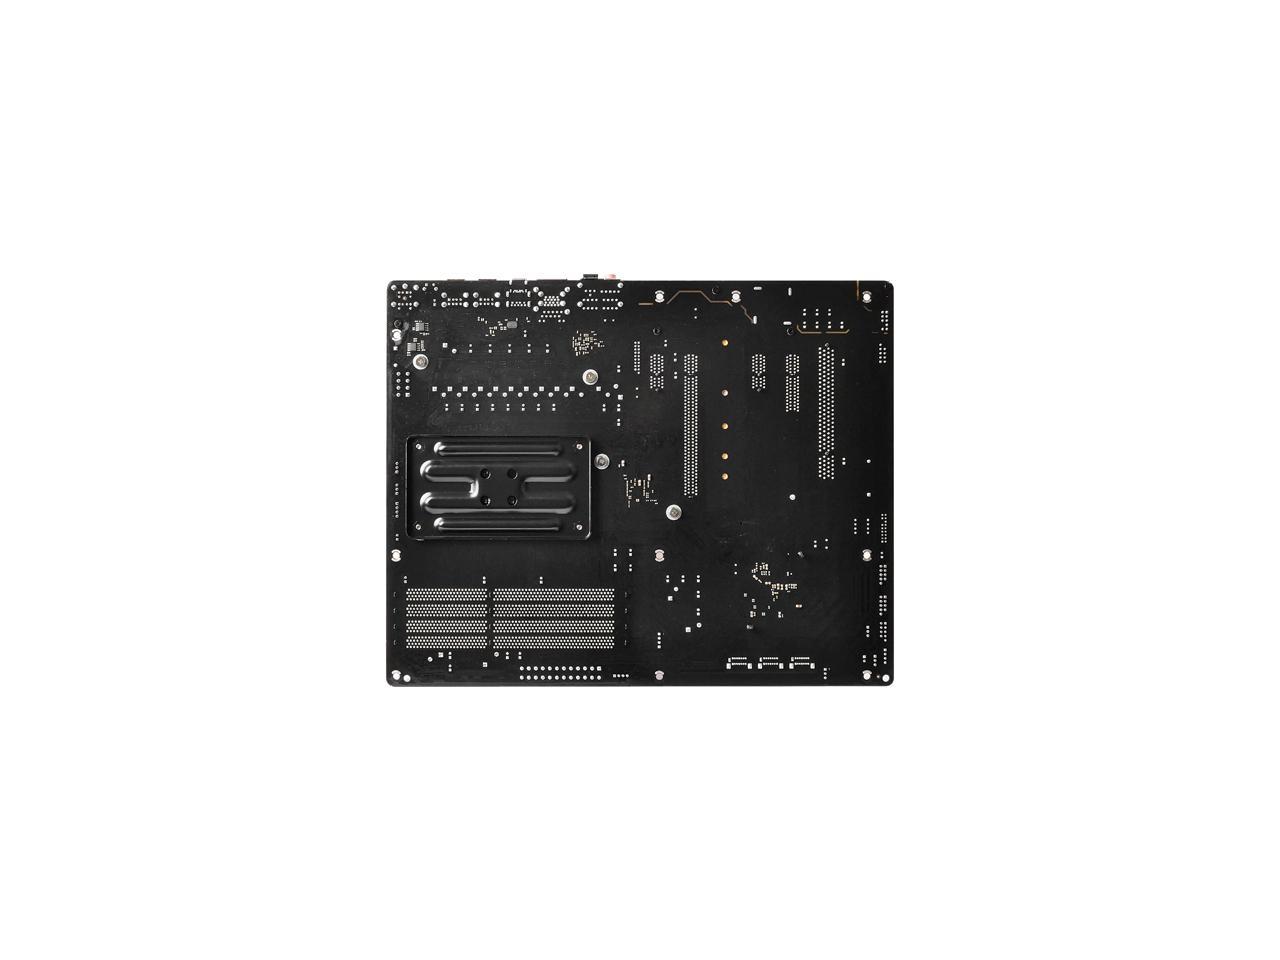 ASRock 970A-G/3.1 AM3+/AM3 AMD 970 SATA 6Gb/s USB 3.1 USB 3.0 ATX AMD Motherboard